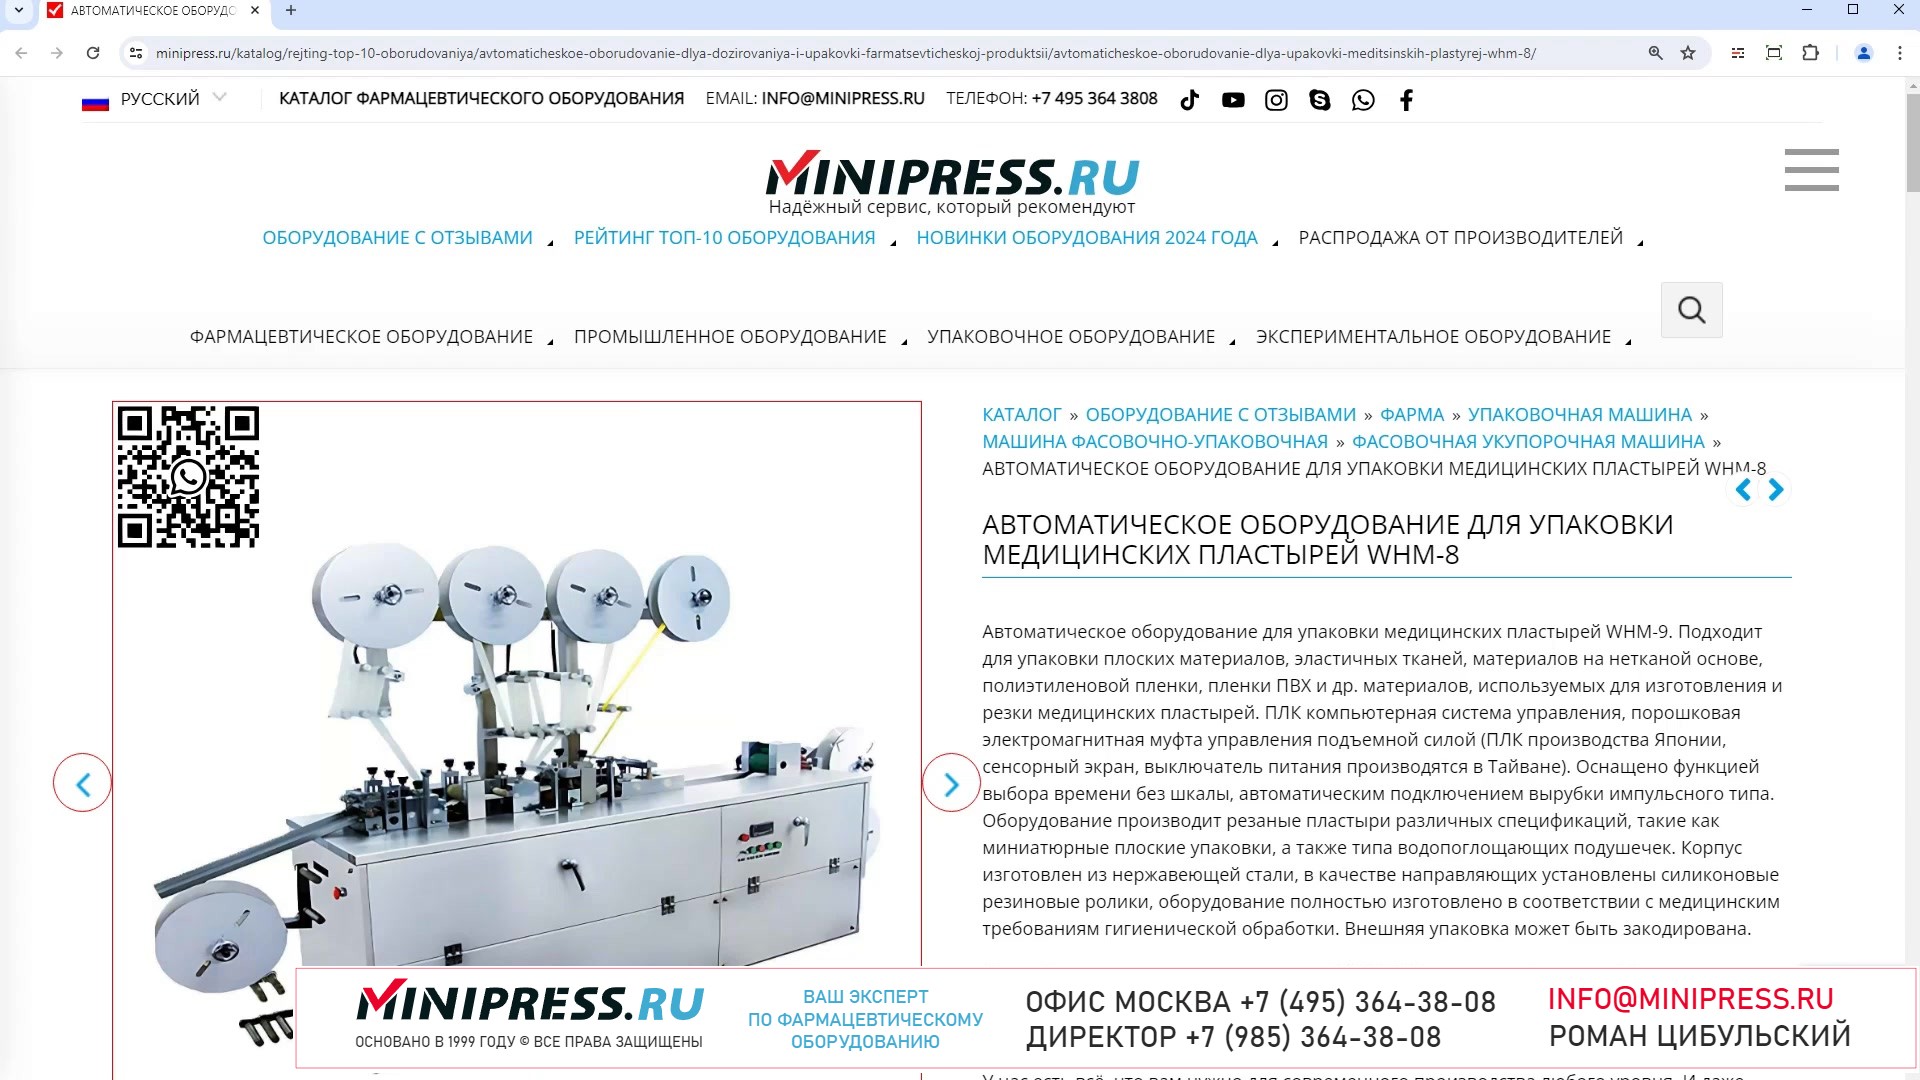 Minipress.ru Автоматическое оборудование для упаковки медицинских пластырей WHM-8